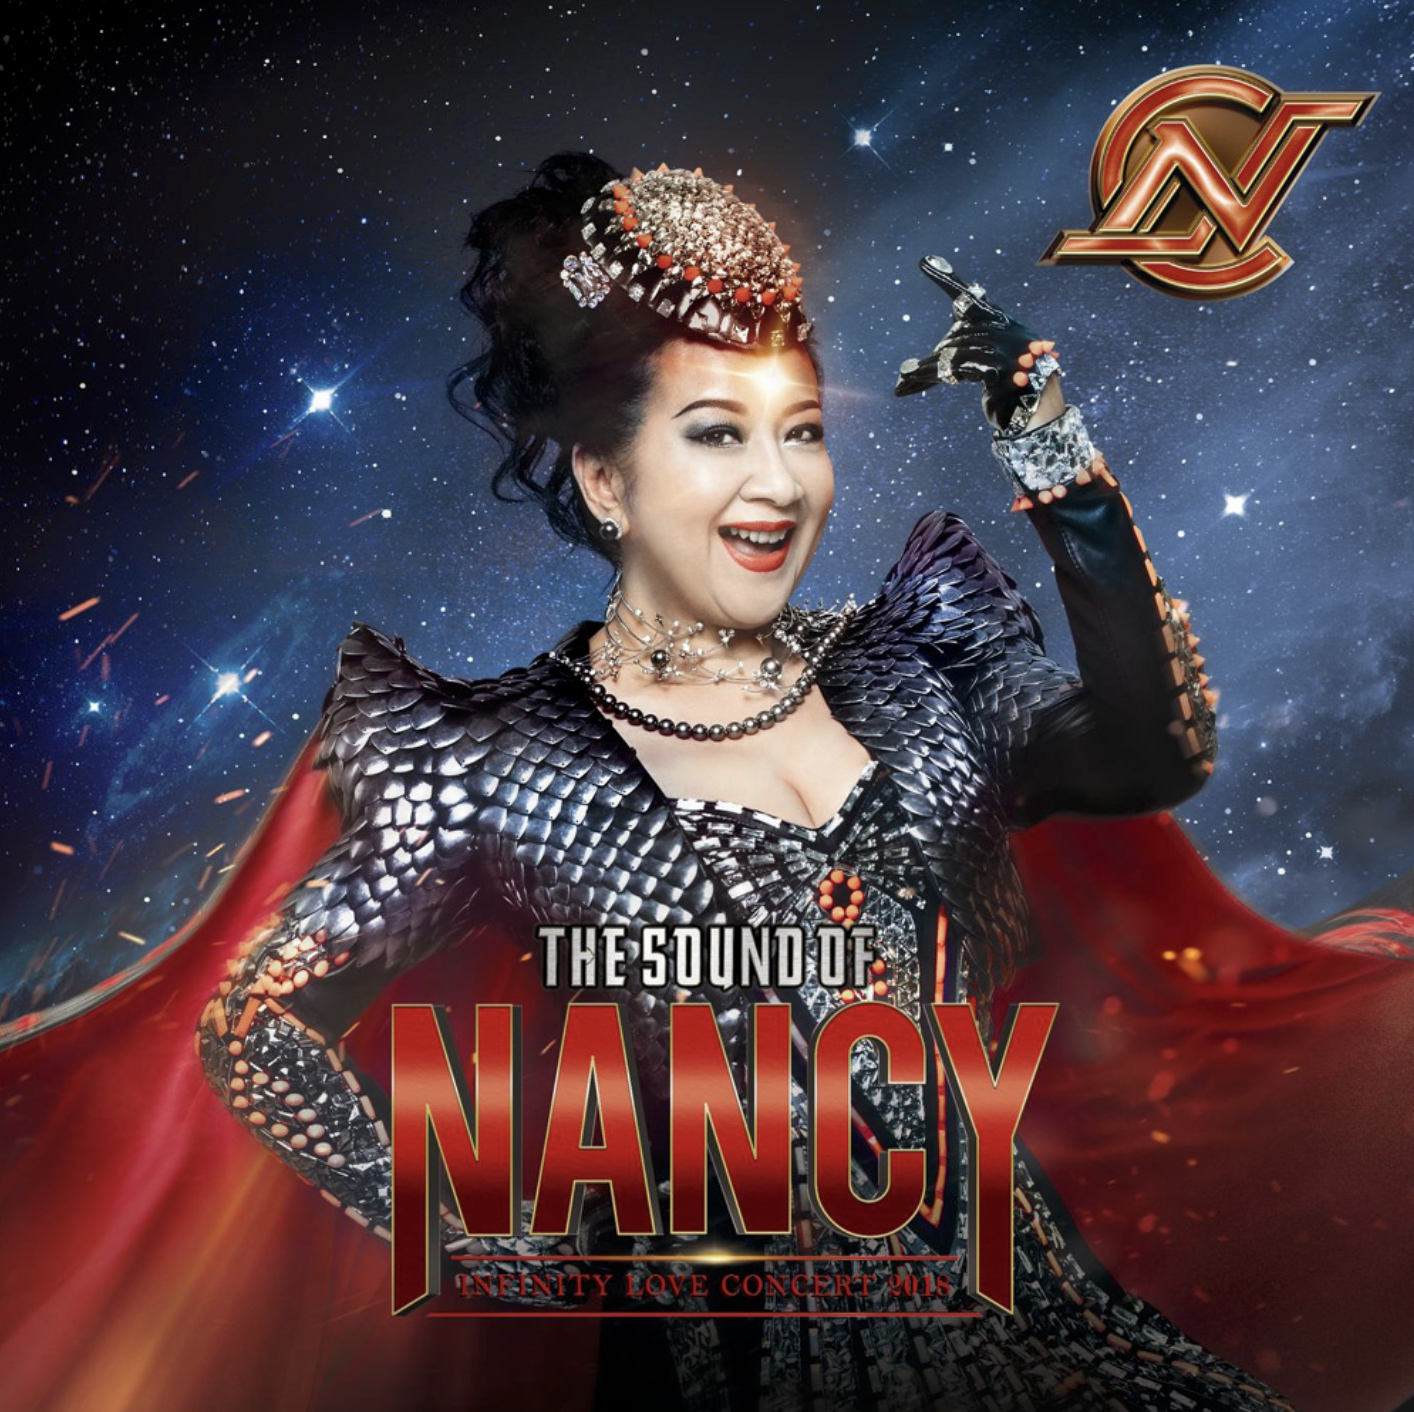 Captain Nancy